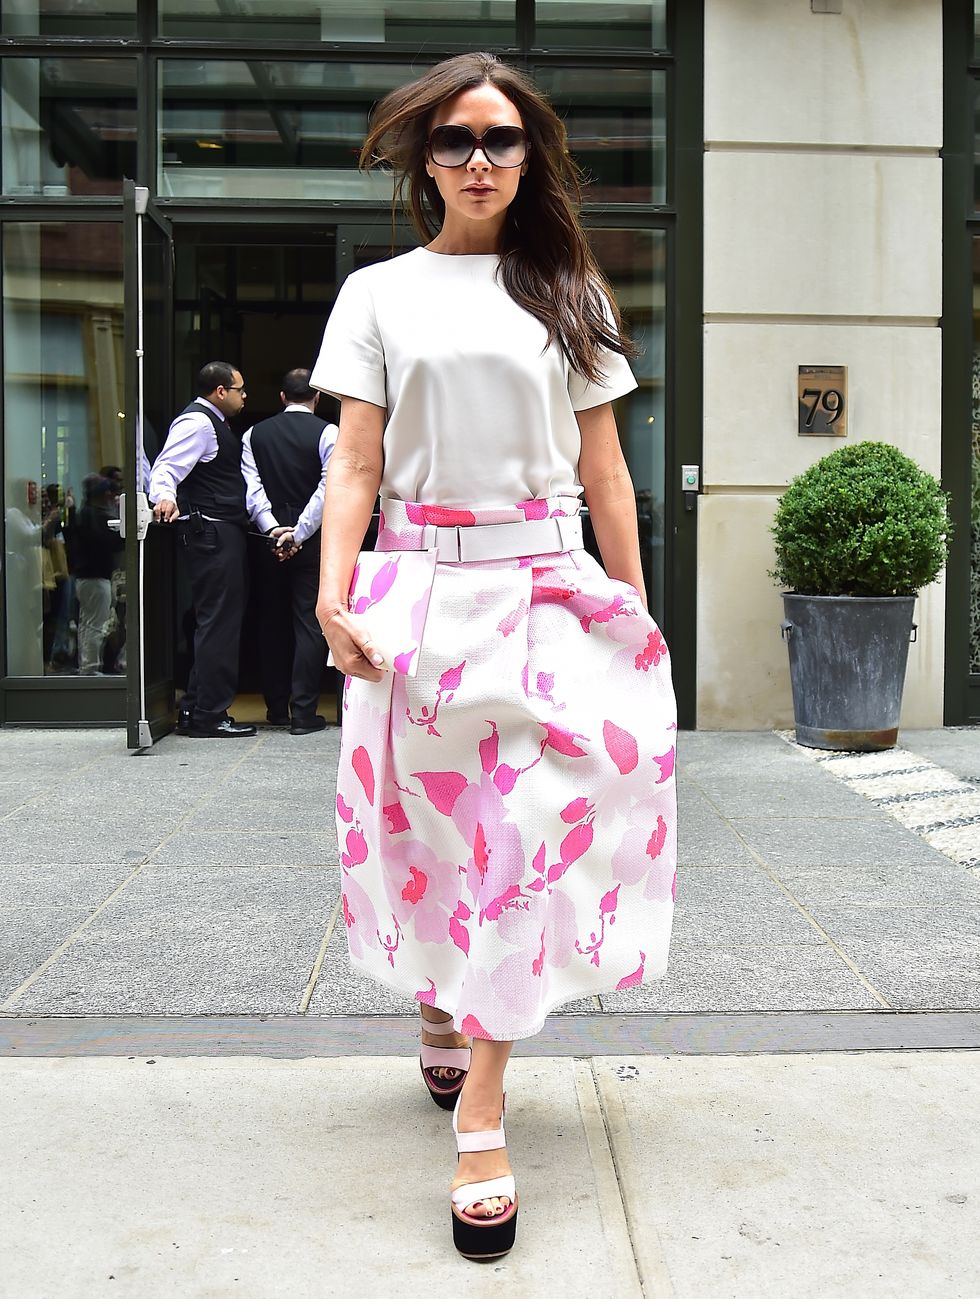 Victoria Beckham wearing a pink floral skirt